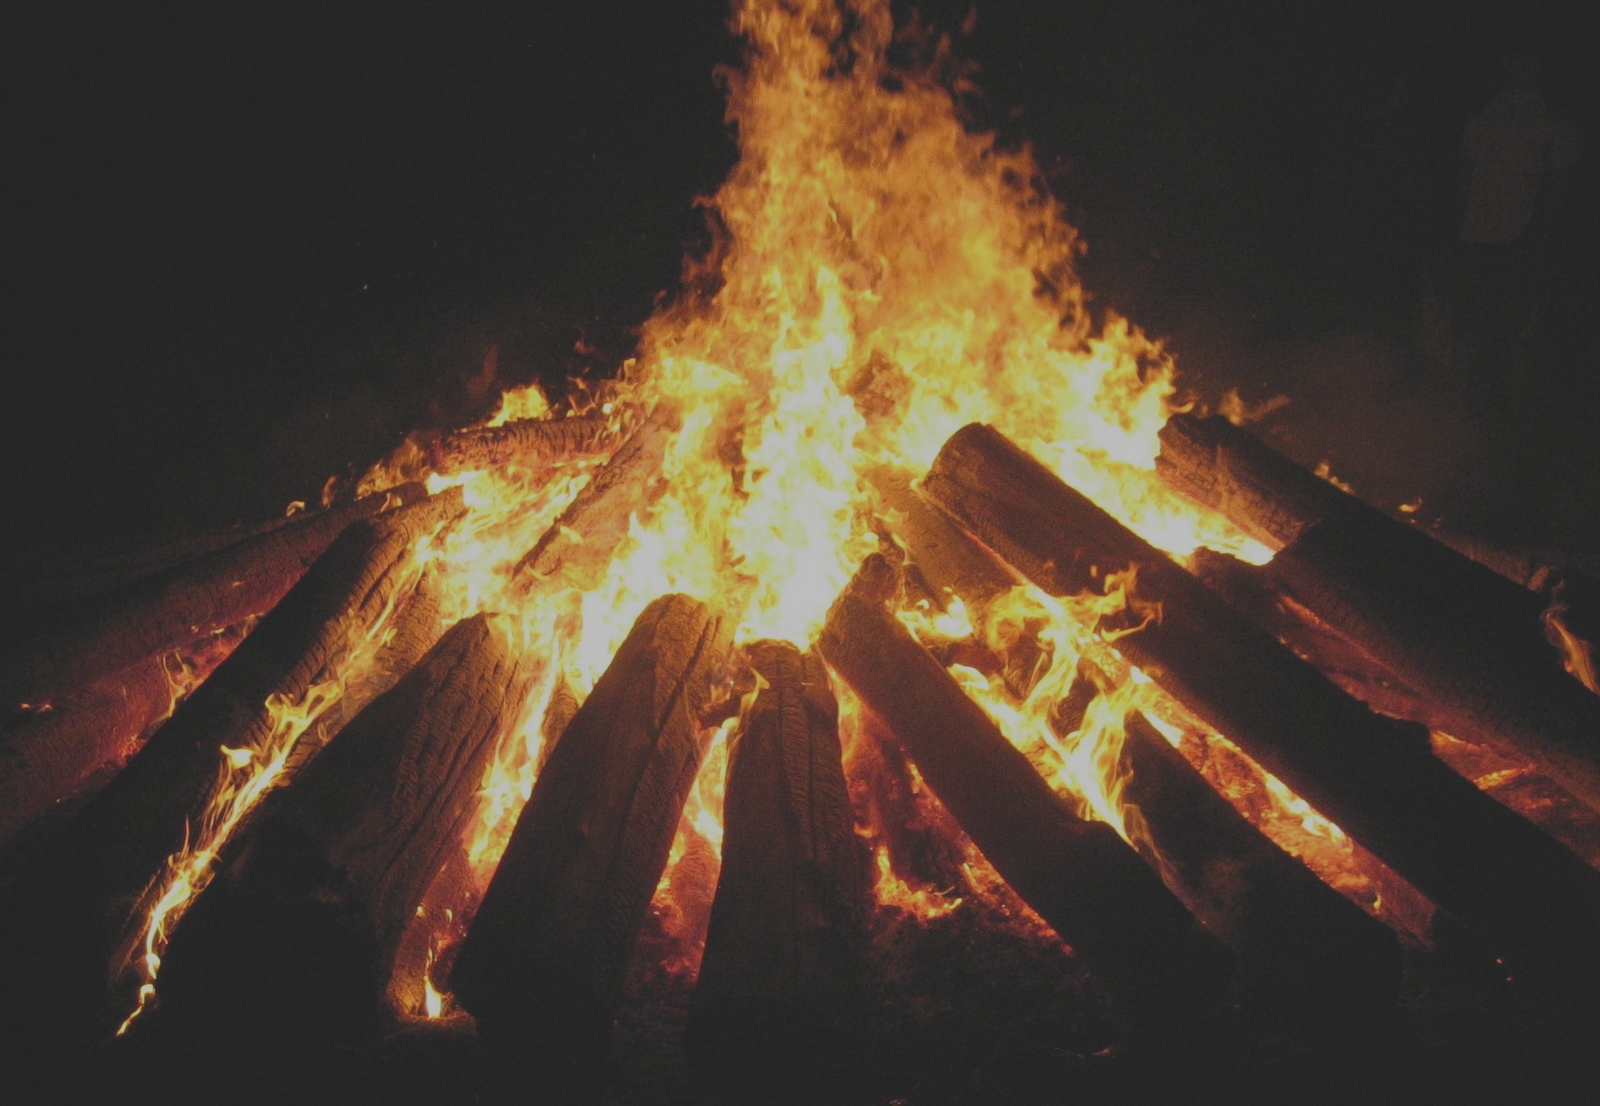 Los Impresionantes “Estigmas de Fuego” por Amor Ardiente a Jesús